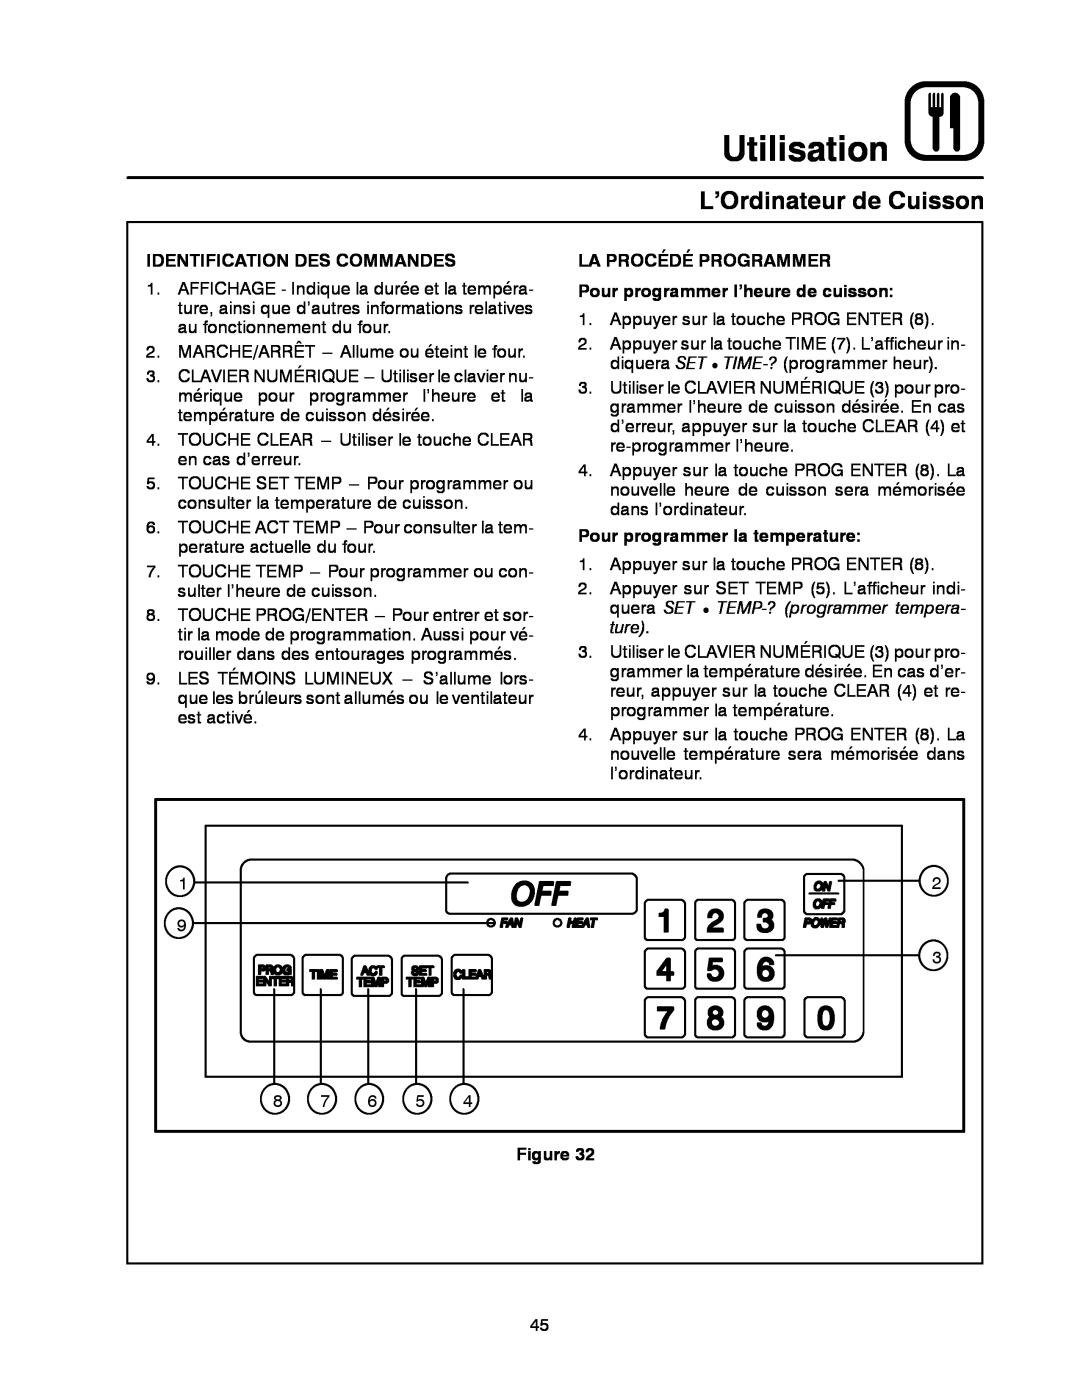 Blodgett MT1828E manual L’Ordinateur de Cuisson, Utilisation, Identification Des Commandes, Pour programmer la temperature 